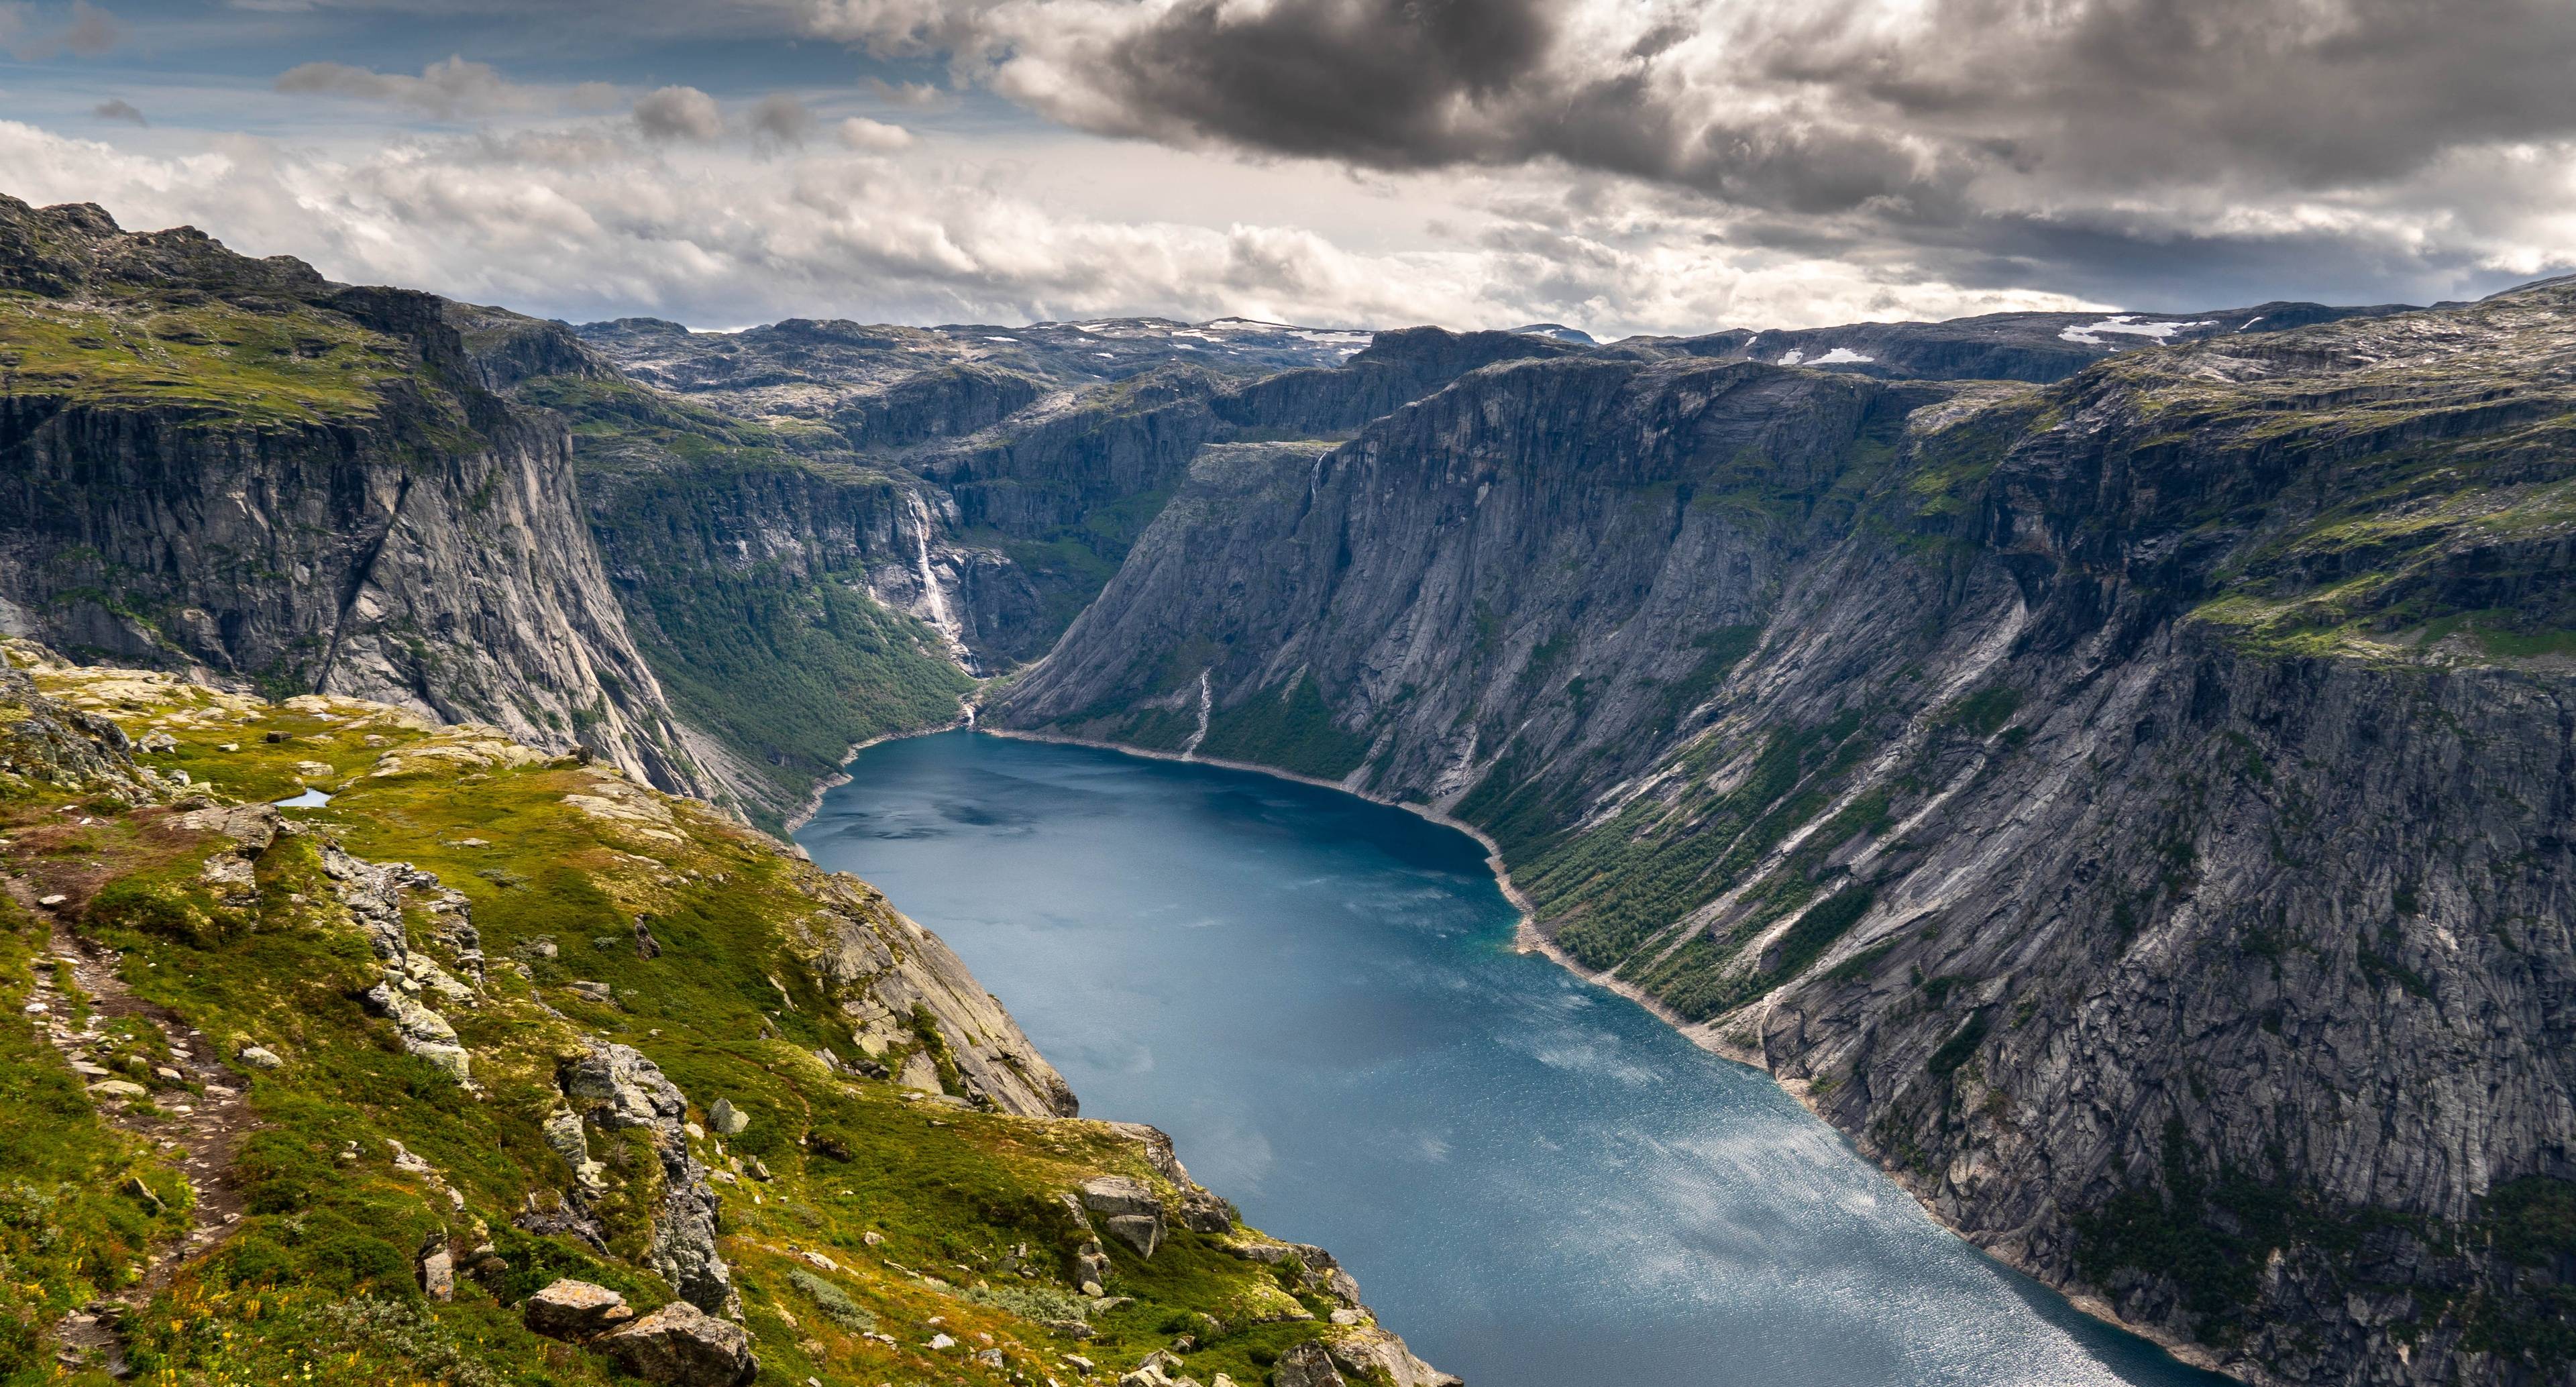 Отправляйтесь в путь, чтобы увидеть самые привлекательные достопримечательности Норвегии, начав путешествие к Тролльтунгу